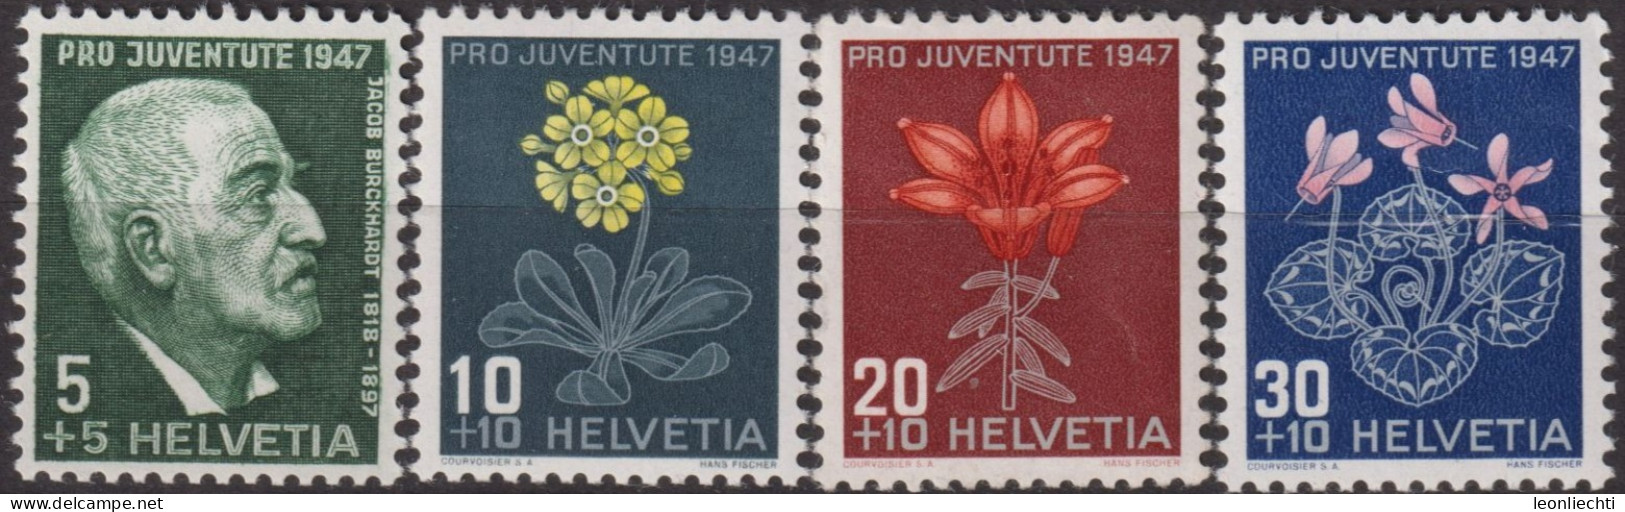 1947 Schweiz Pro Juventute ** Mi:CH 488-491, Yt:CH 445-448, Zum:CH J121-J124, J. Burckhardt Und Alpenblumen - Unused Stamps